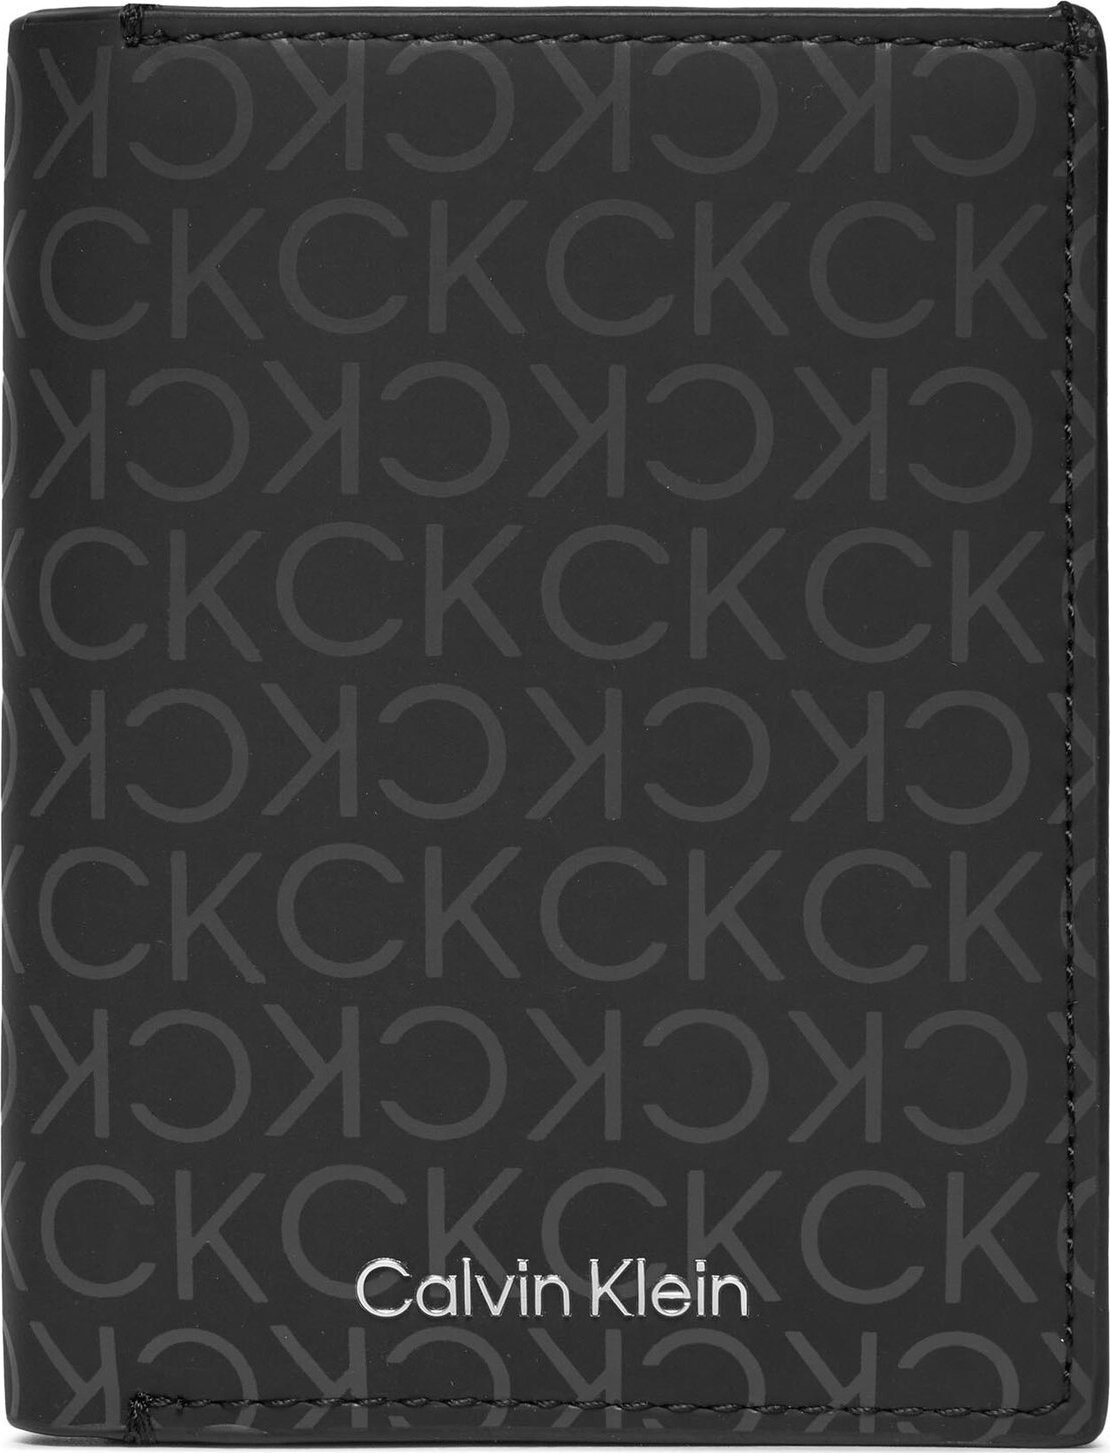 Velká pánská peněženka Calvin Klein Rubberized Trifold 6Cc W/Detach K50K511379 Uv Mono Black 0GL